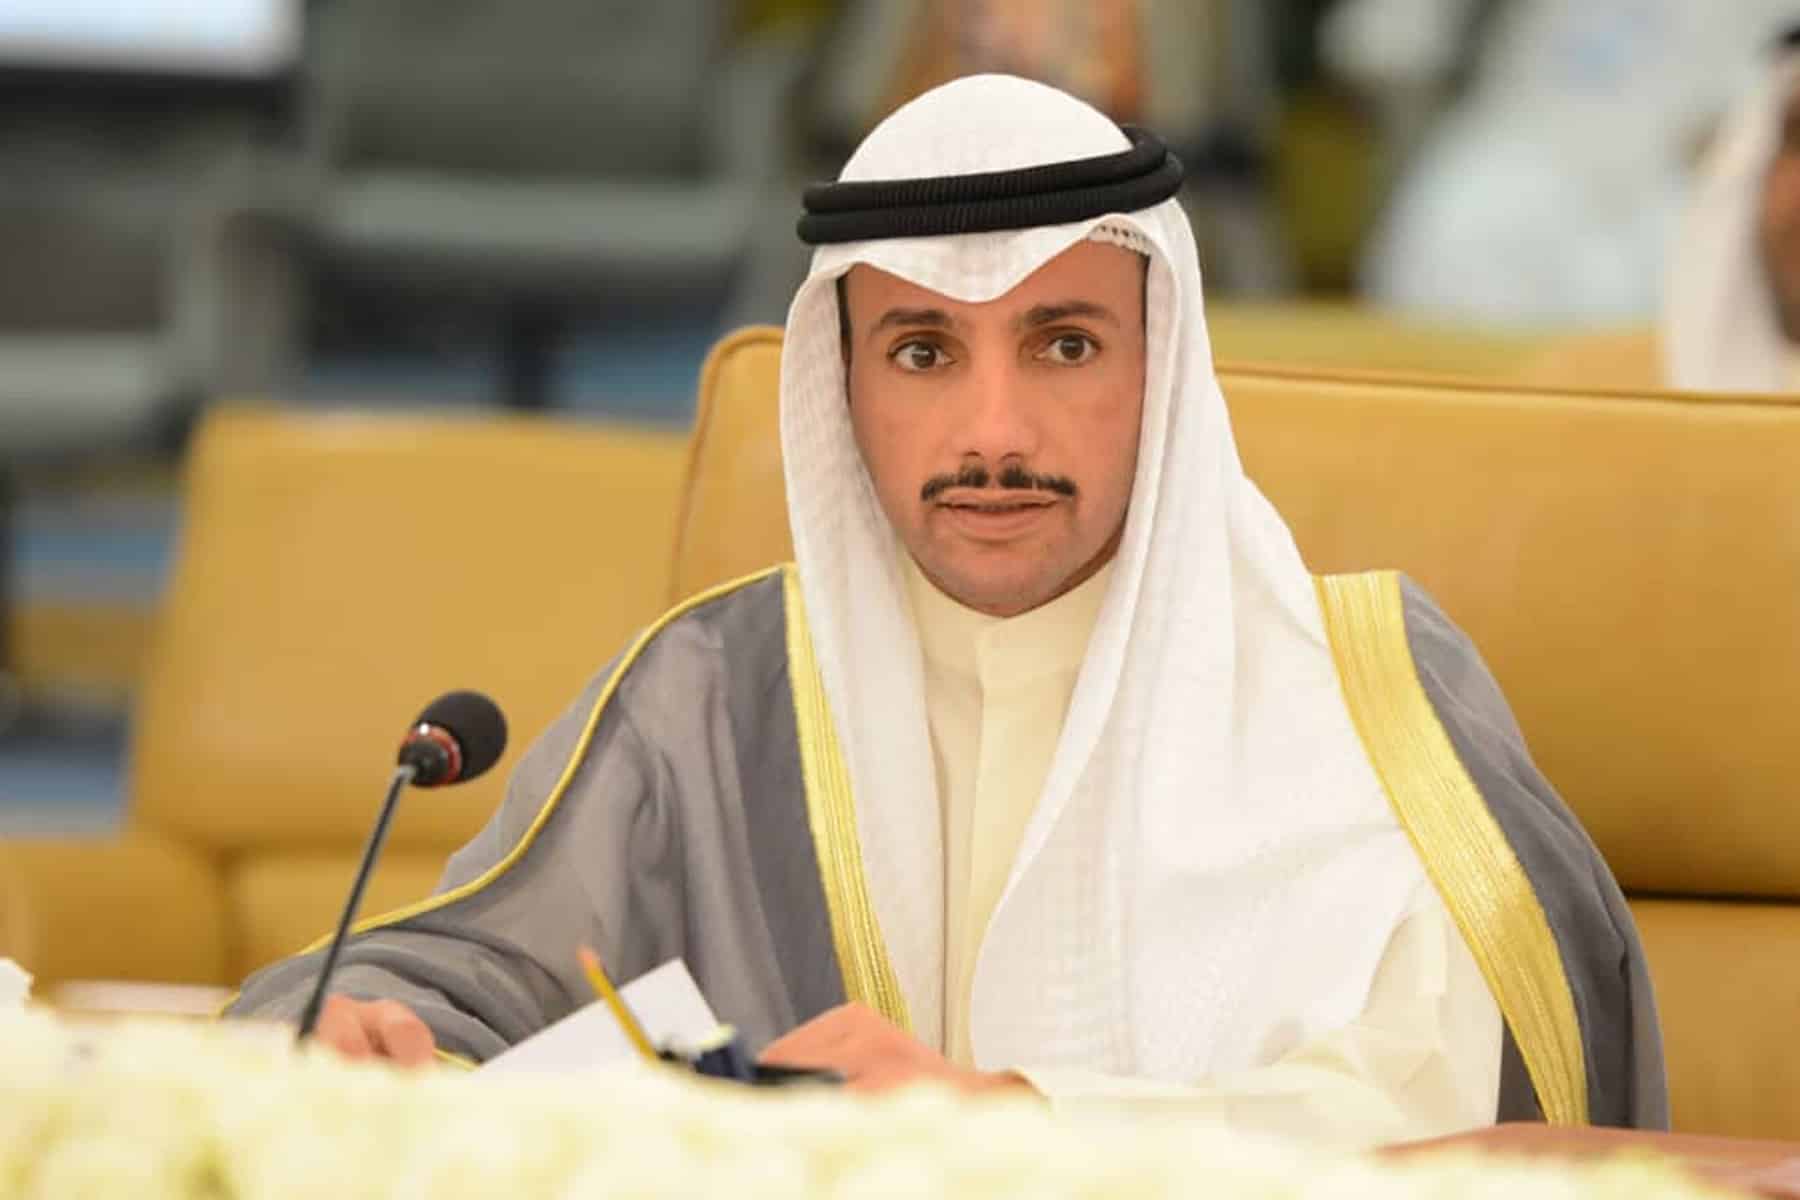 المرأة الشبح التي خدعت حكومة الكويت watanserb.com